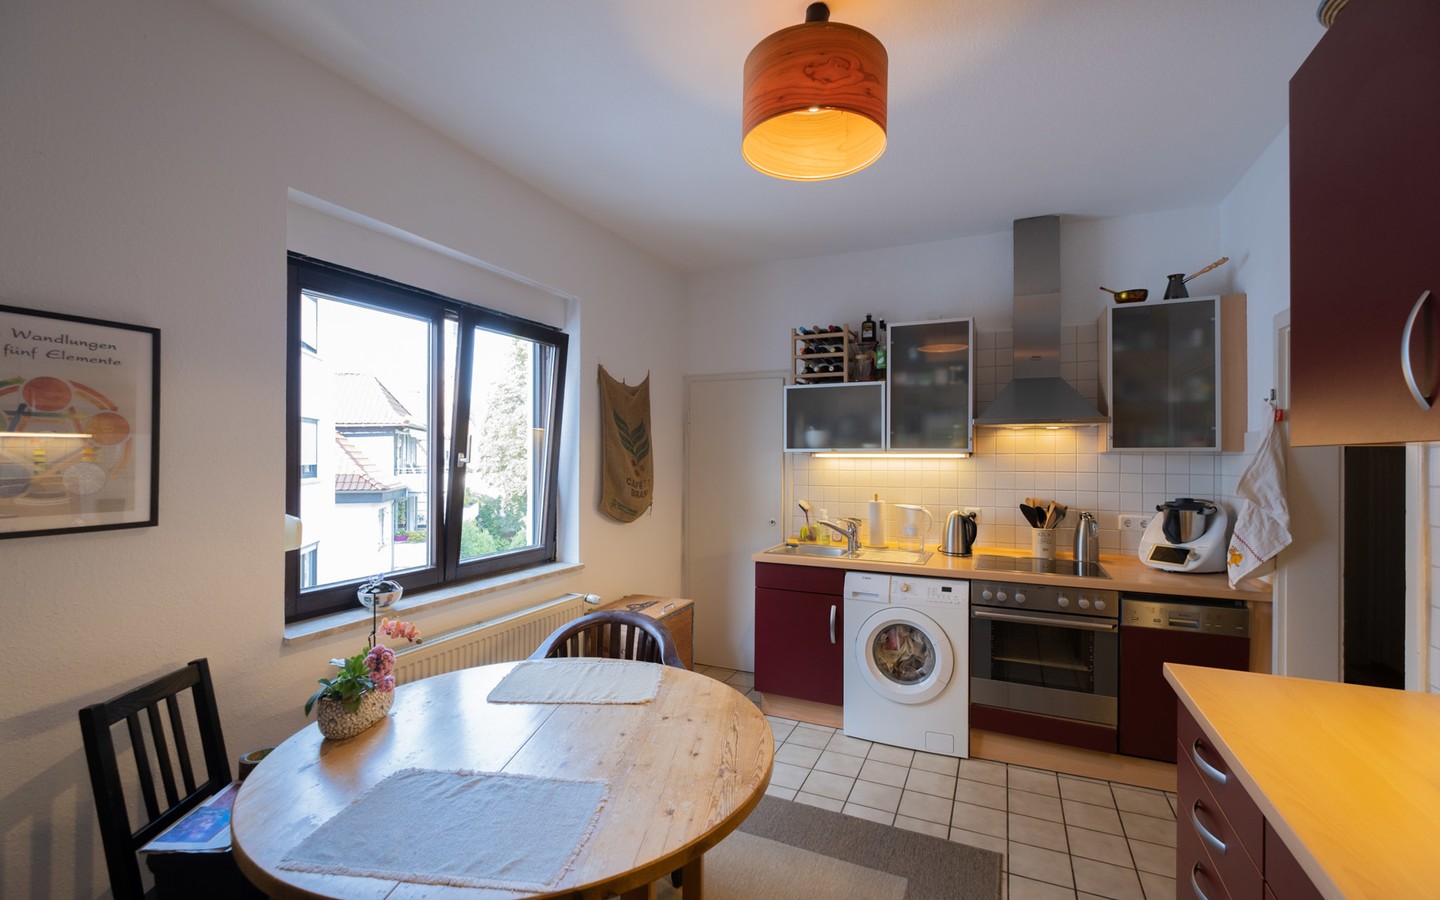 Küche - Seltene Gelegenheit in HD-Weststadt: bezugsfreie 2-Zimmer-Wohnung mit Loggia zur Sonnenseite